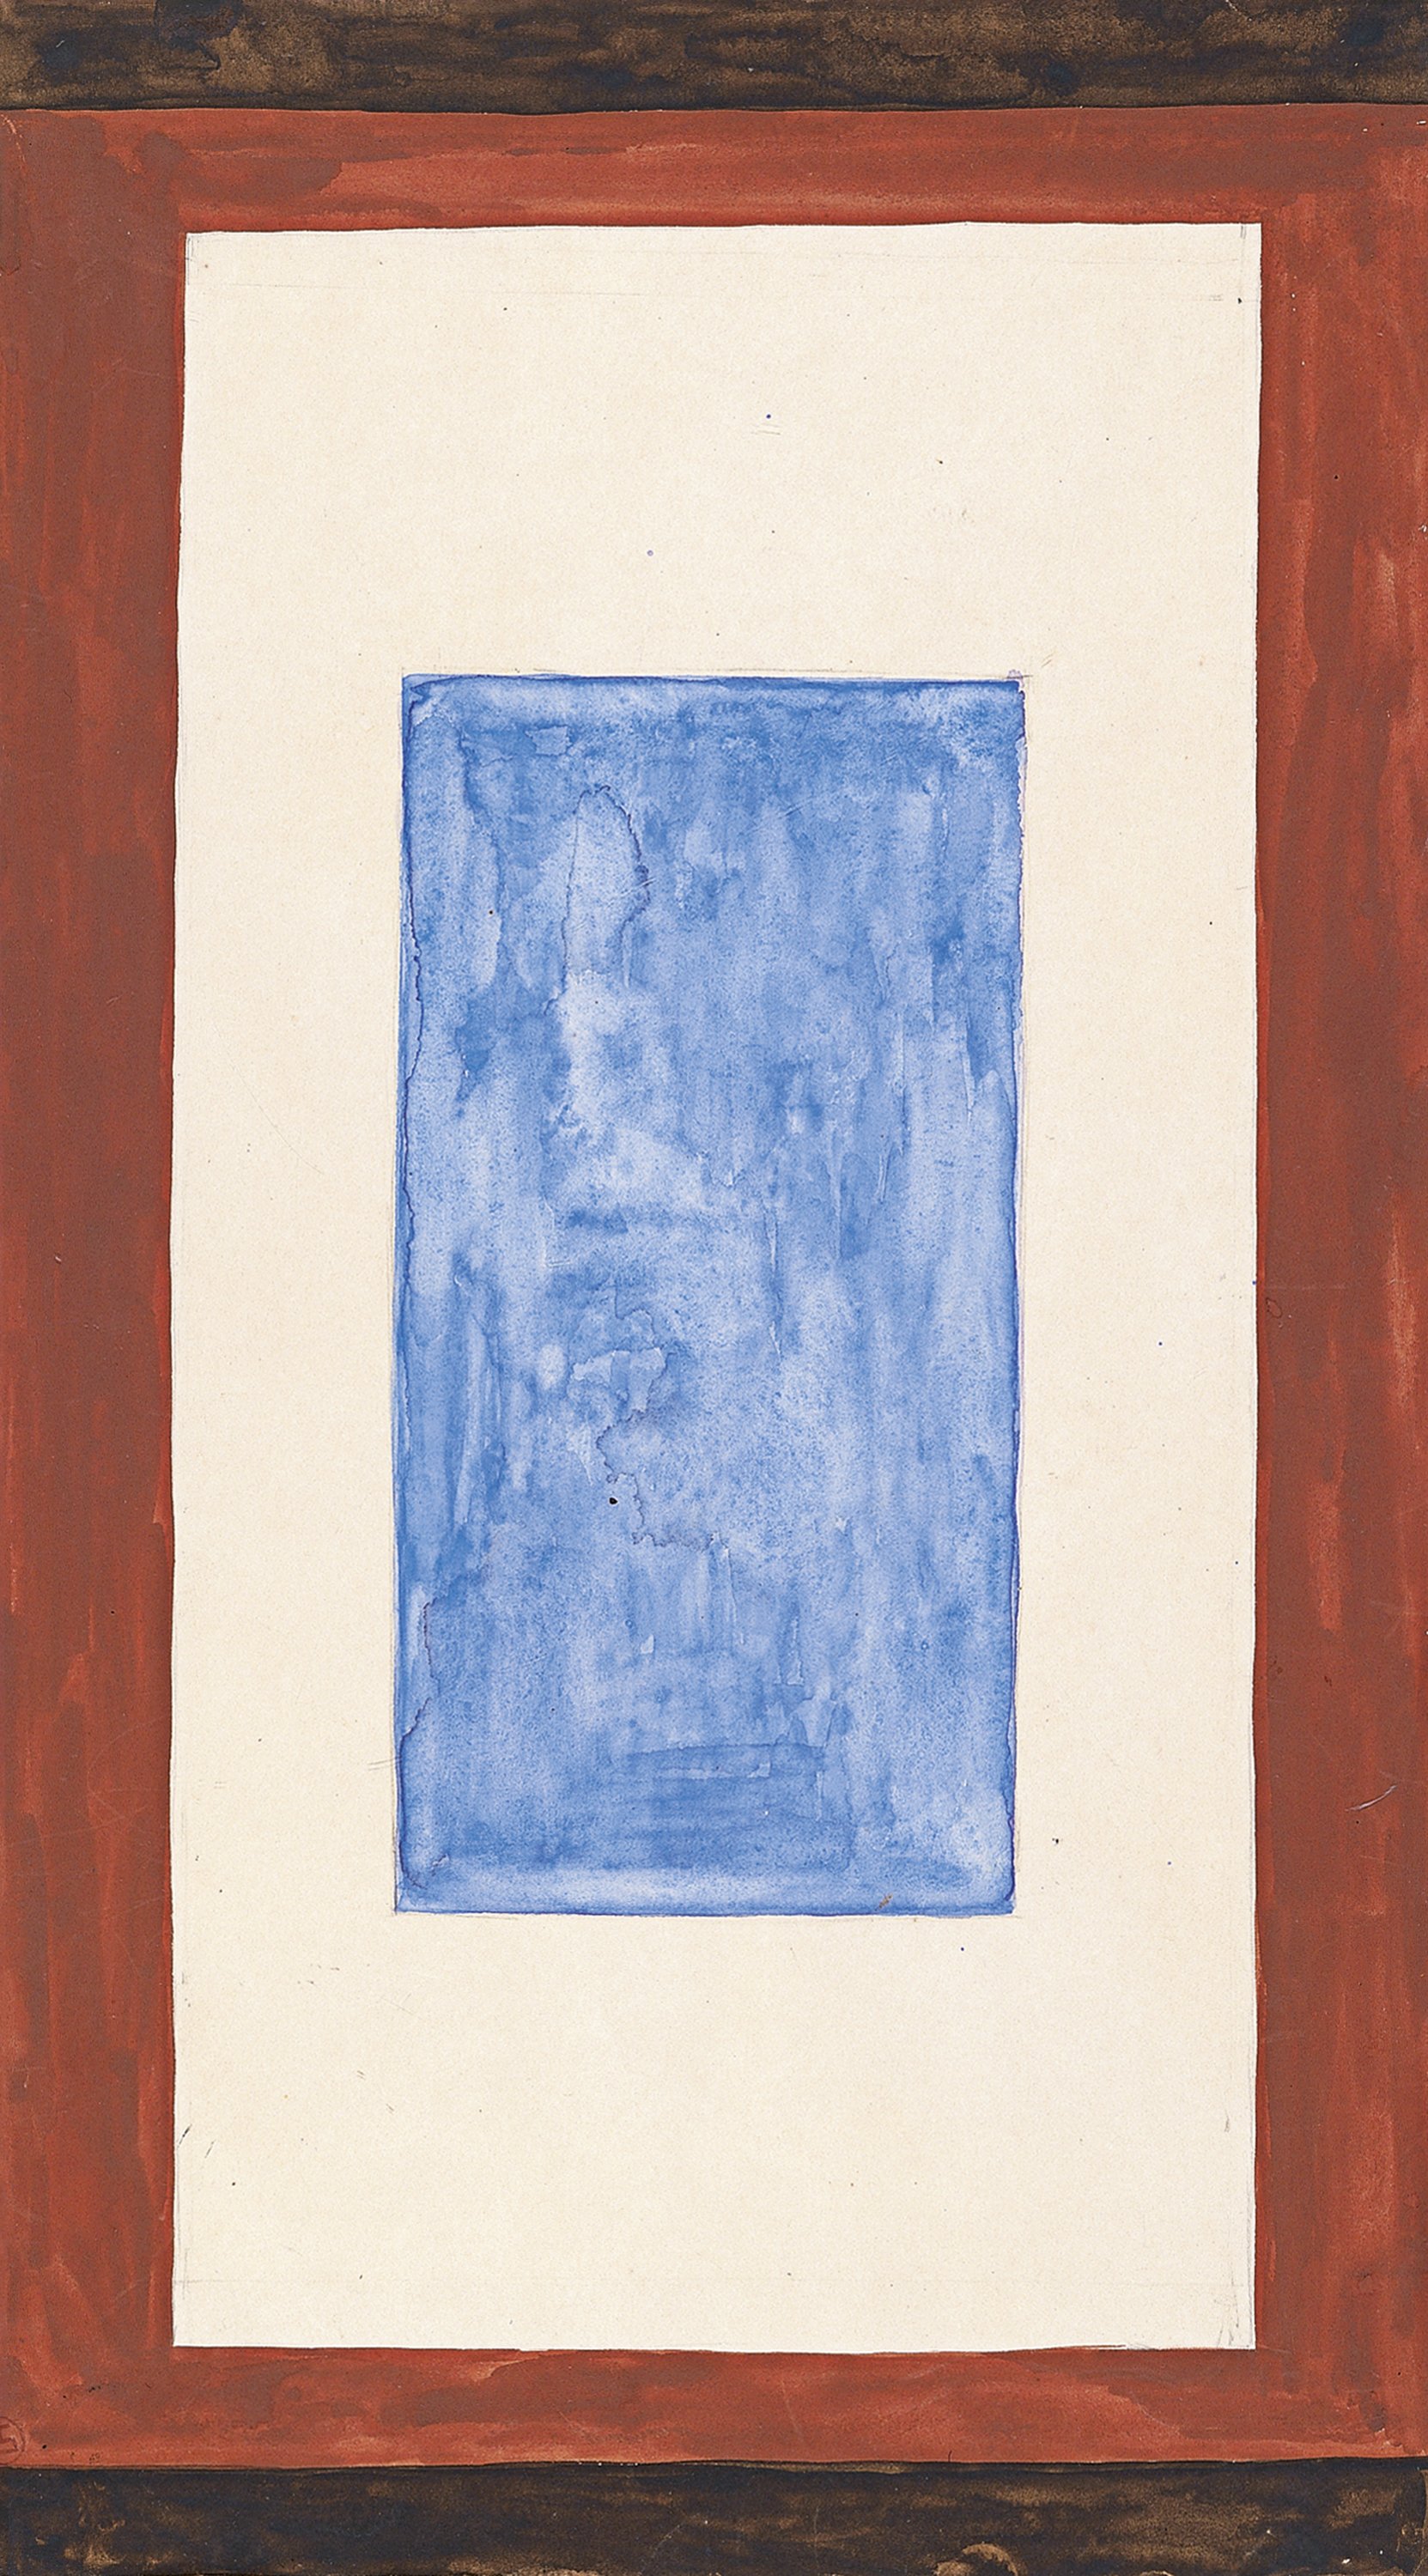 Composition with Blue Rectangle. Composición con rectángulo azul, c. 1950-1959